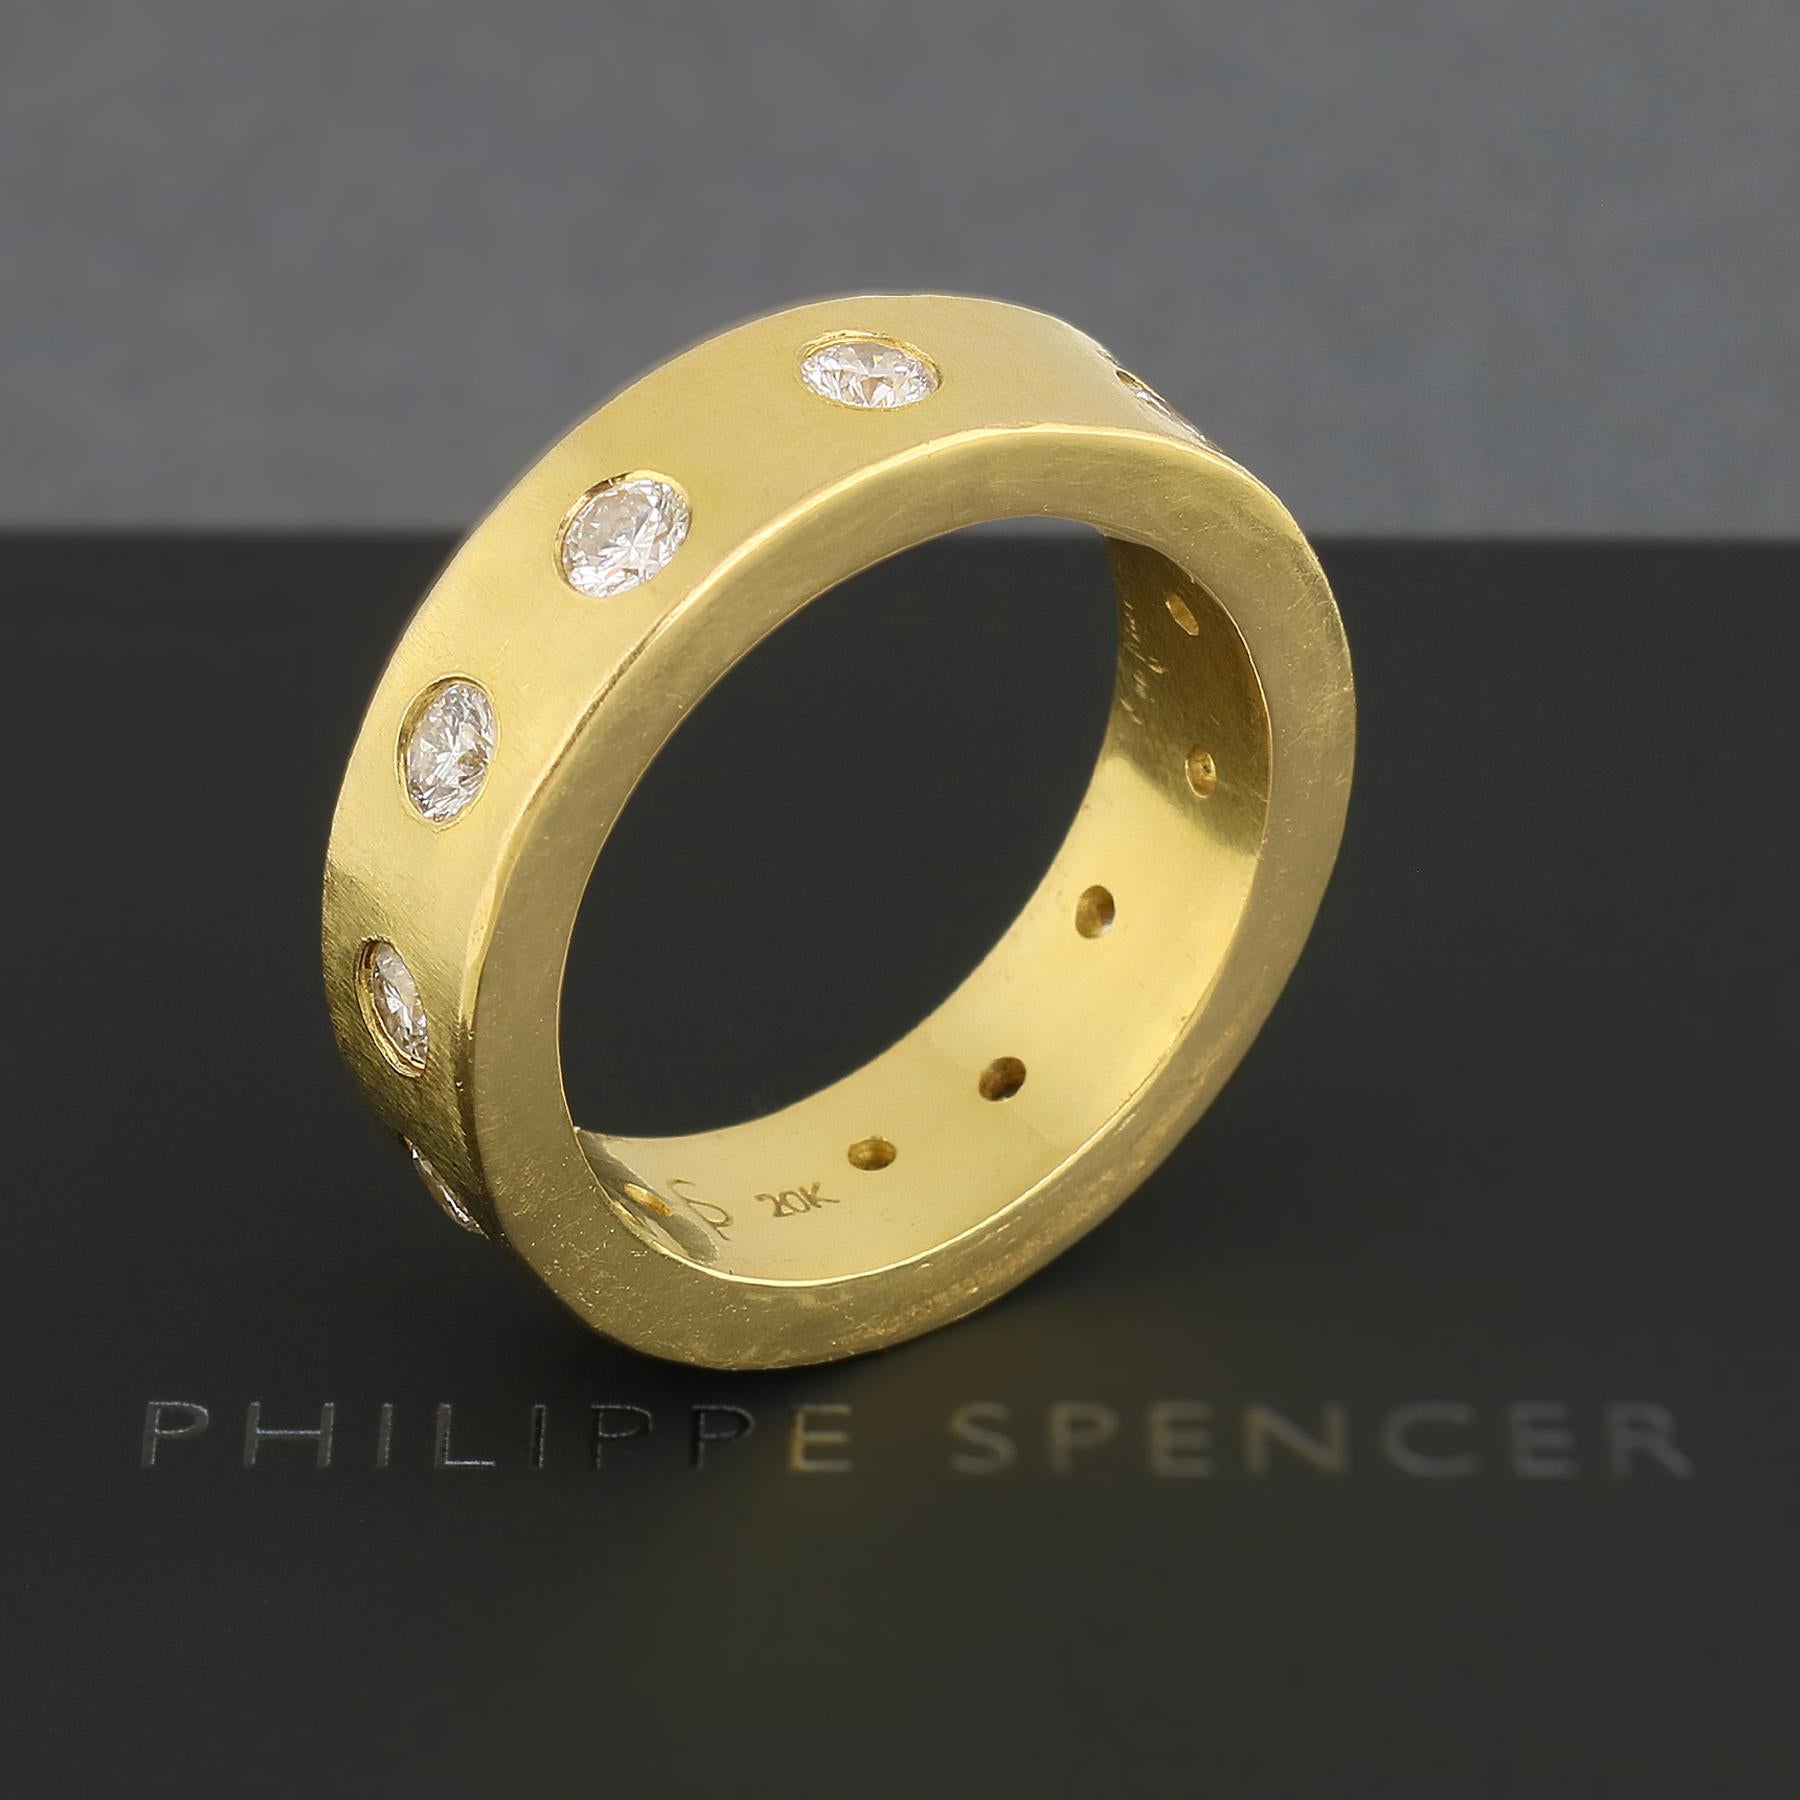 PHILIPPE SPENCER - Bague pour homme 8 X 3mm en or massif 20K entièrement forgé à la main avec 12 incolores (D-F)  3.5mm ( 2.16 Ct Total) Diamants. Extérieur en finition enclume mate épaisse, côtés et intérieur polis.  Chacune est une œuvre d'art